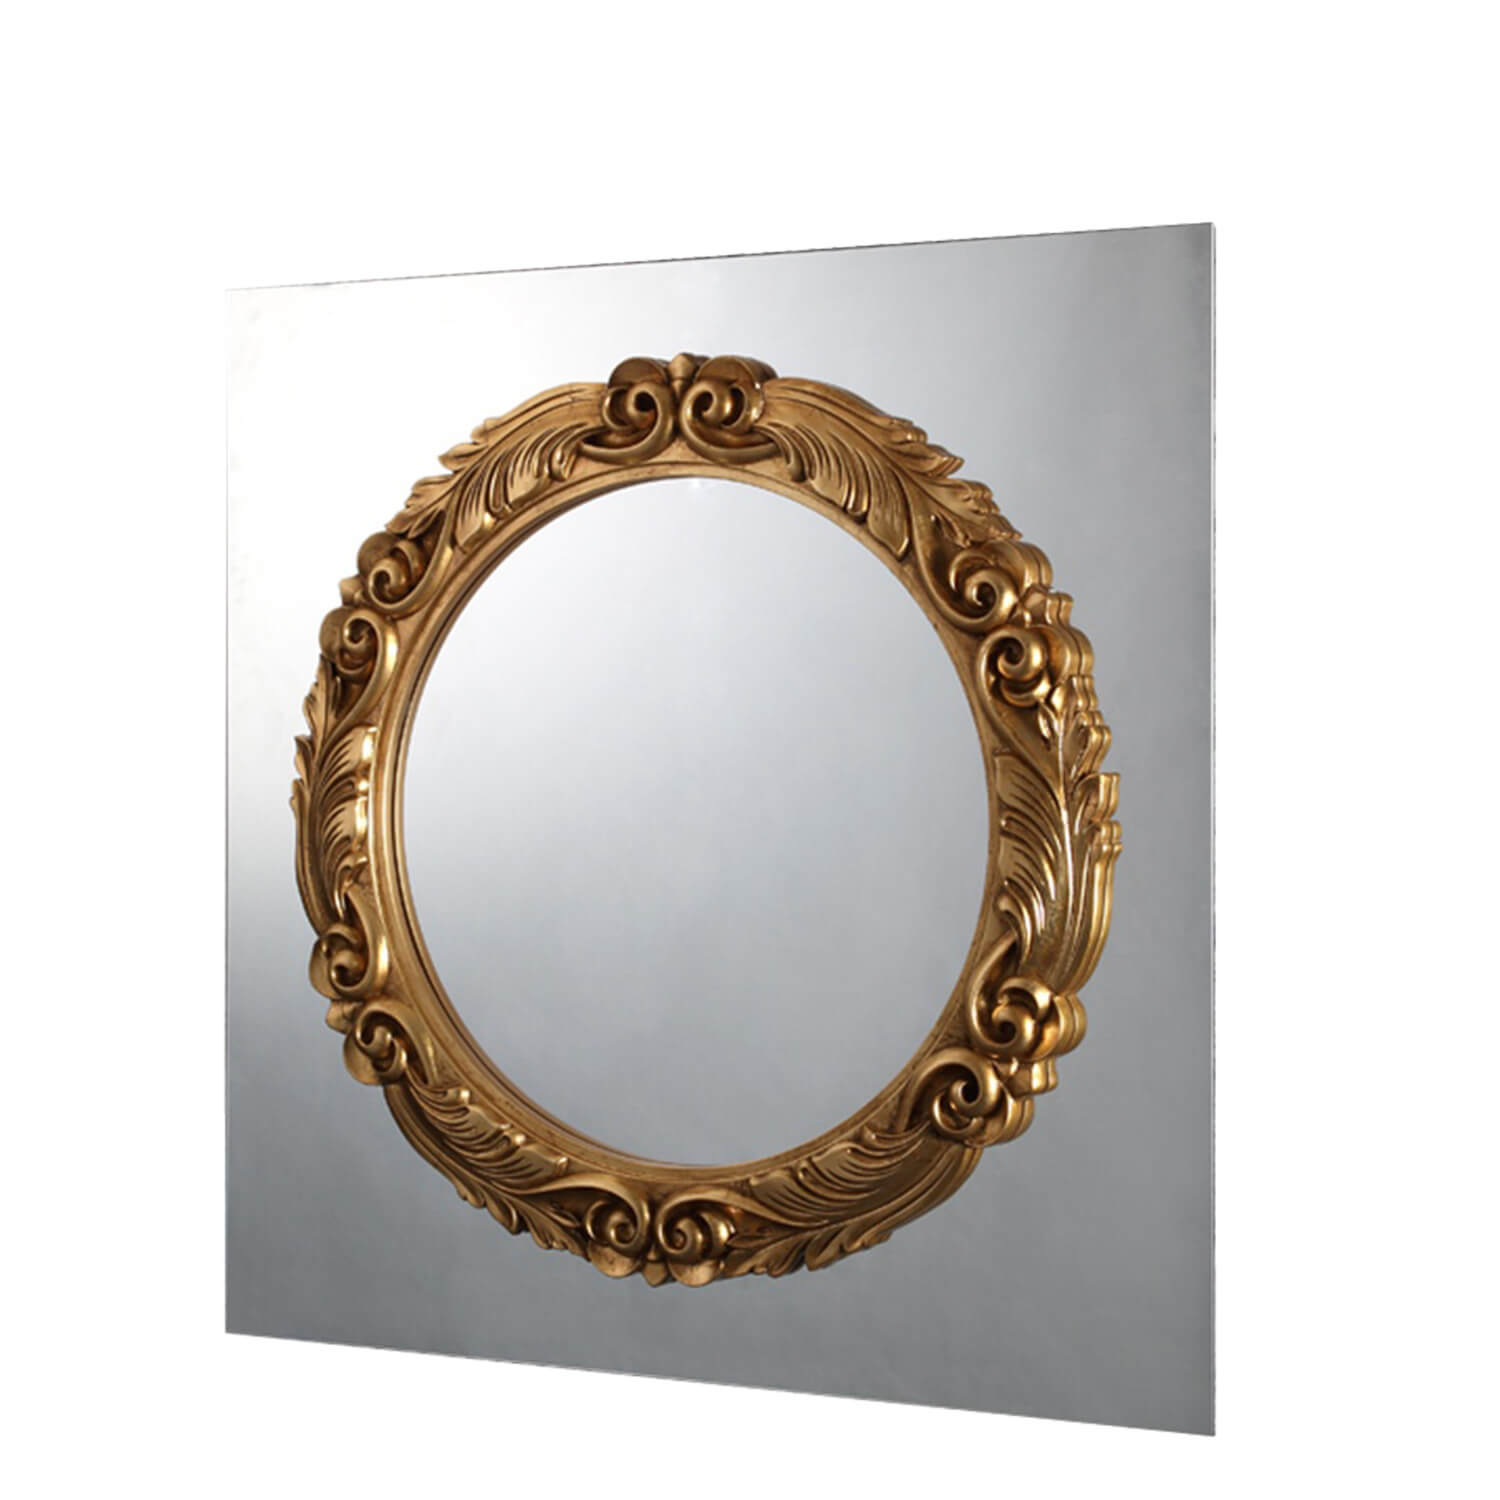 Caroso oro mirror